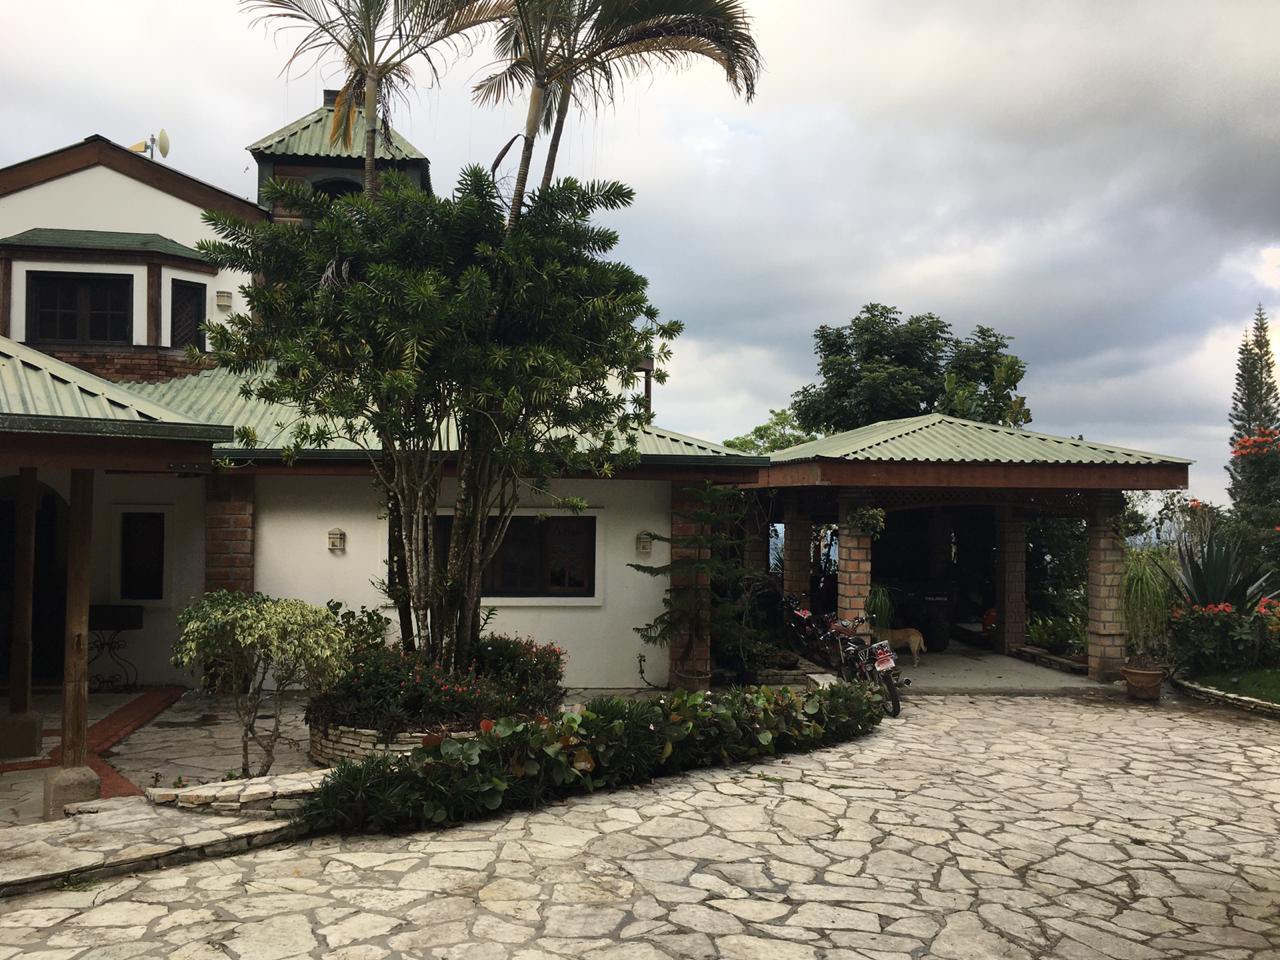 casas vacacionales y villas - Vendo casa de veraneo en la montaña de La colonia cambista 